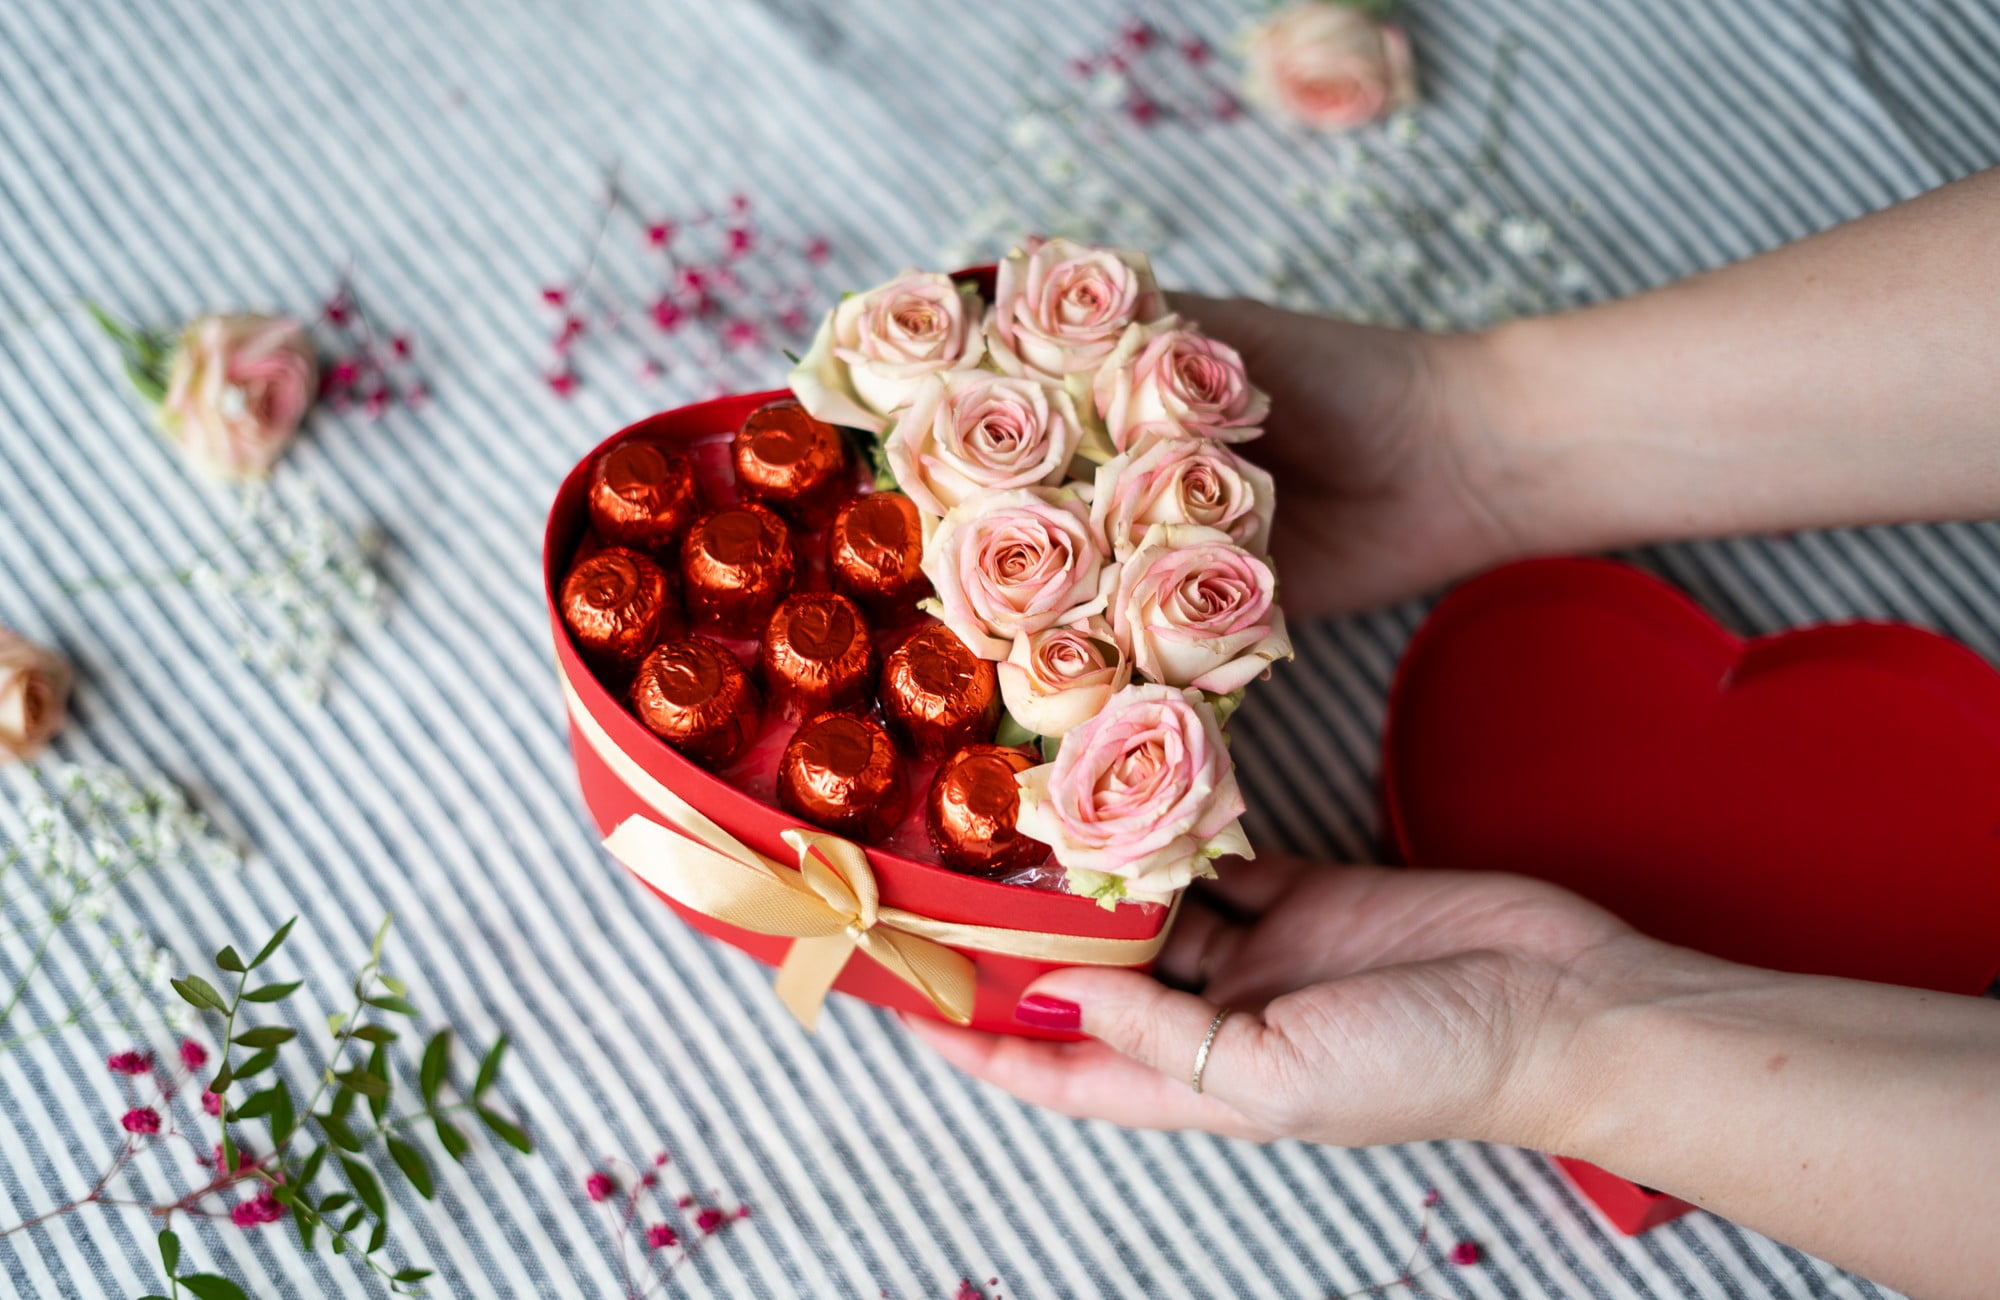 Čokoláda a kvety spolu v tvare srdca - originálny darček pre mamu.